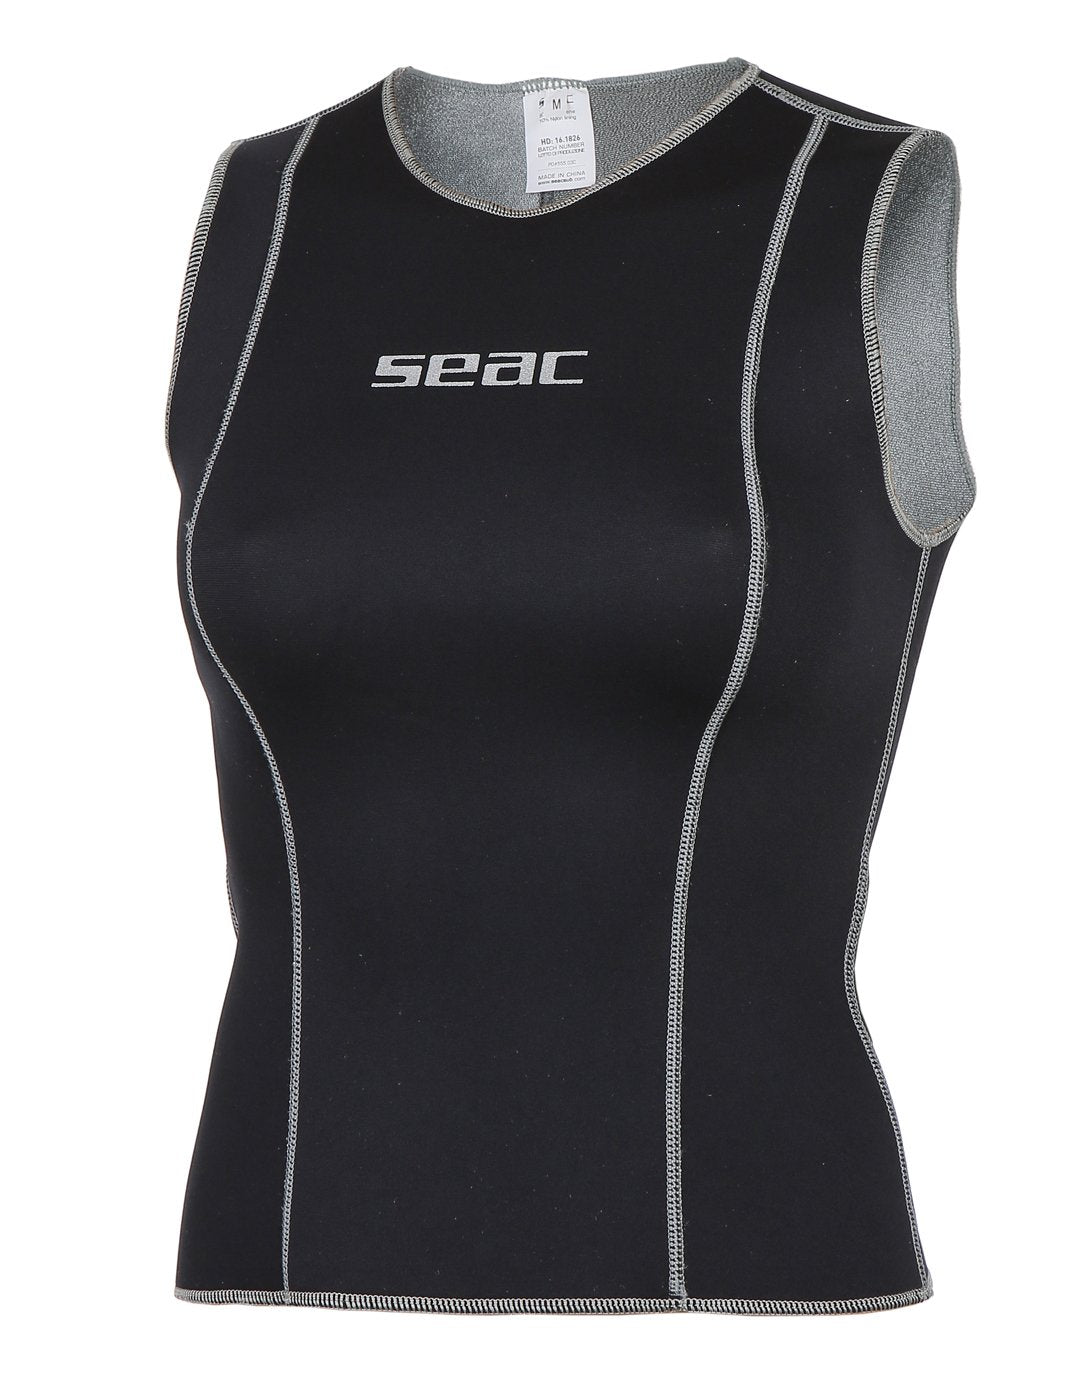 Seac Sub Undersuit Womens 25mm Vest Simply Scuba Uk